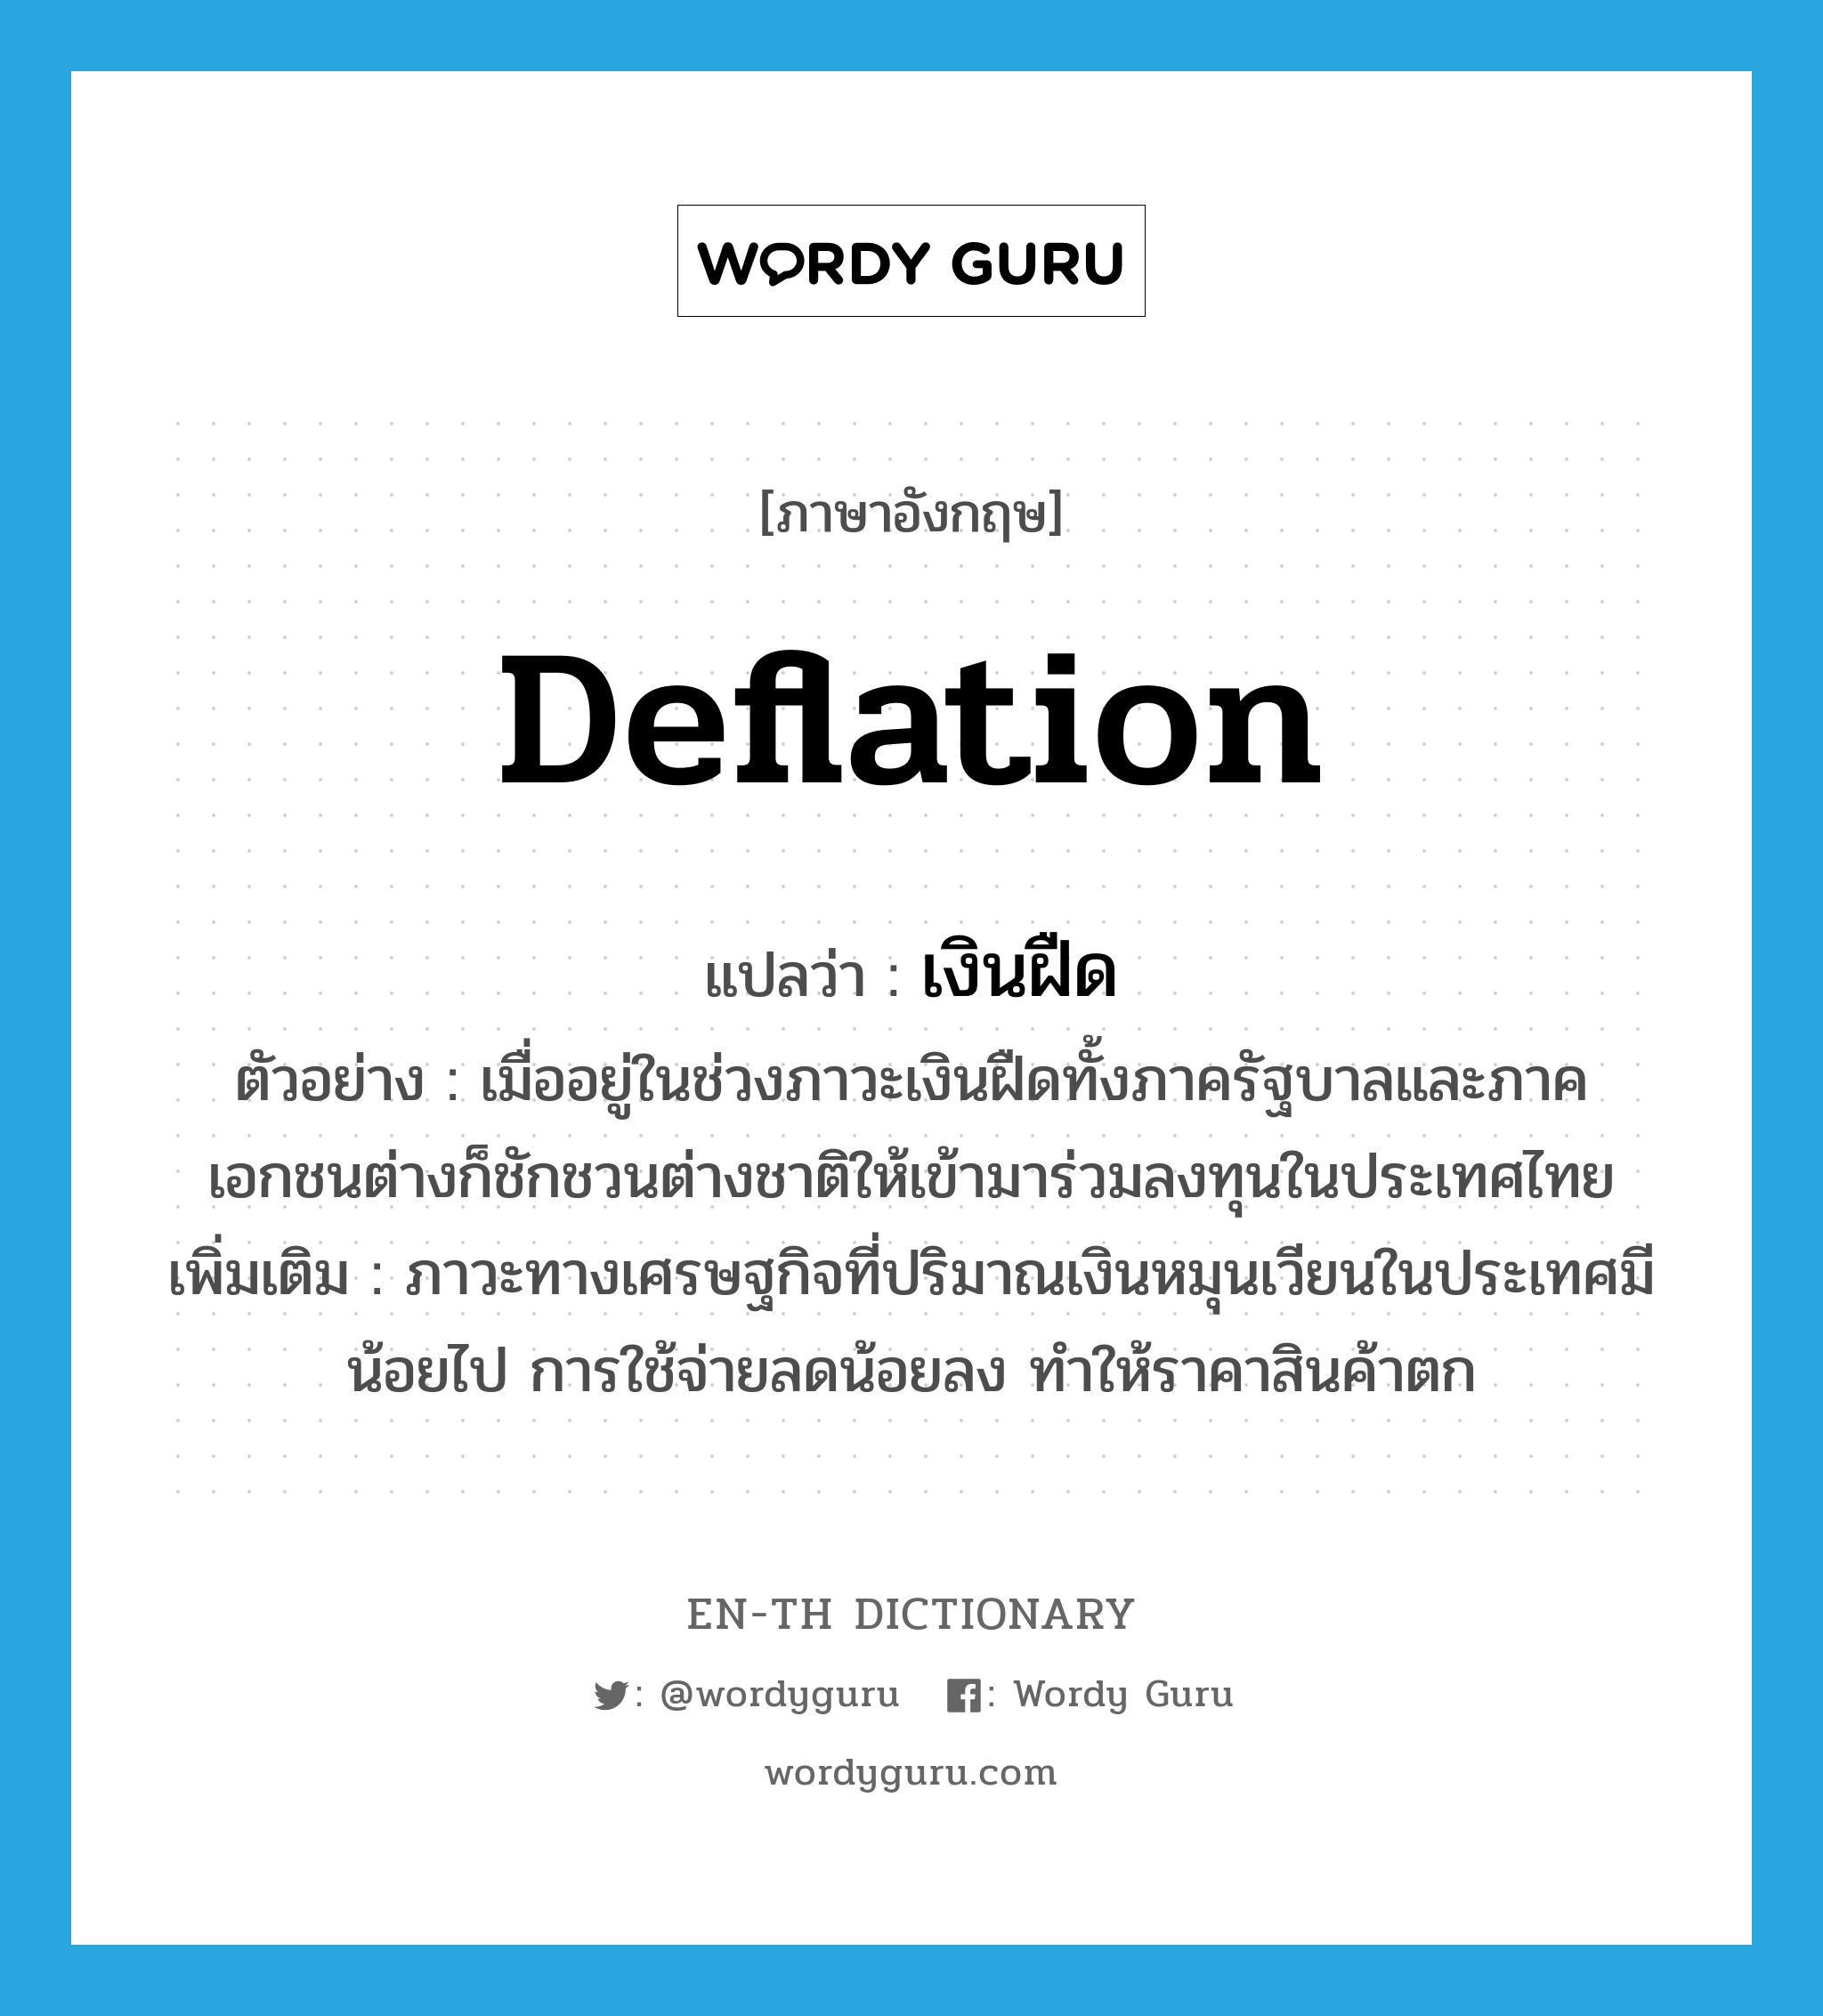 deflation แปลว่า?, คำศัพท์ภาษาอังกฤษ deflation แปลว่า เงินฝืด ประเภท N ตัวอย่าง เมื่ออยู่ในช่วงภาวะเงินฝืดทั้งภาครัฐบาลและภาคเอกชนต่างก็ชักชวนต่างชาติให้เข้ามาร่วมลงทุนในประเทศไทย เพิ่มเติม ภาวะทางเศรษฐกิจที่ปริมาณเงินหมุนเวียนในประเทศมีน้อยไป การใช้จ่ายลดน้อยลง ทำให้ราคาสินค้าตก หมวด N